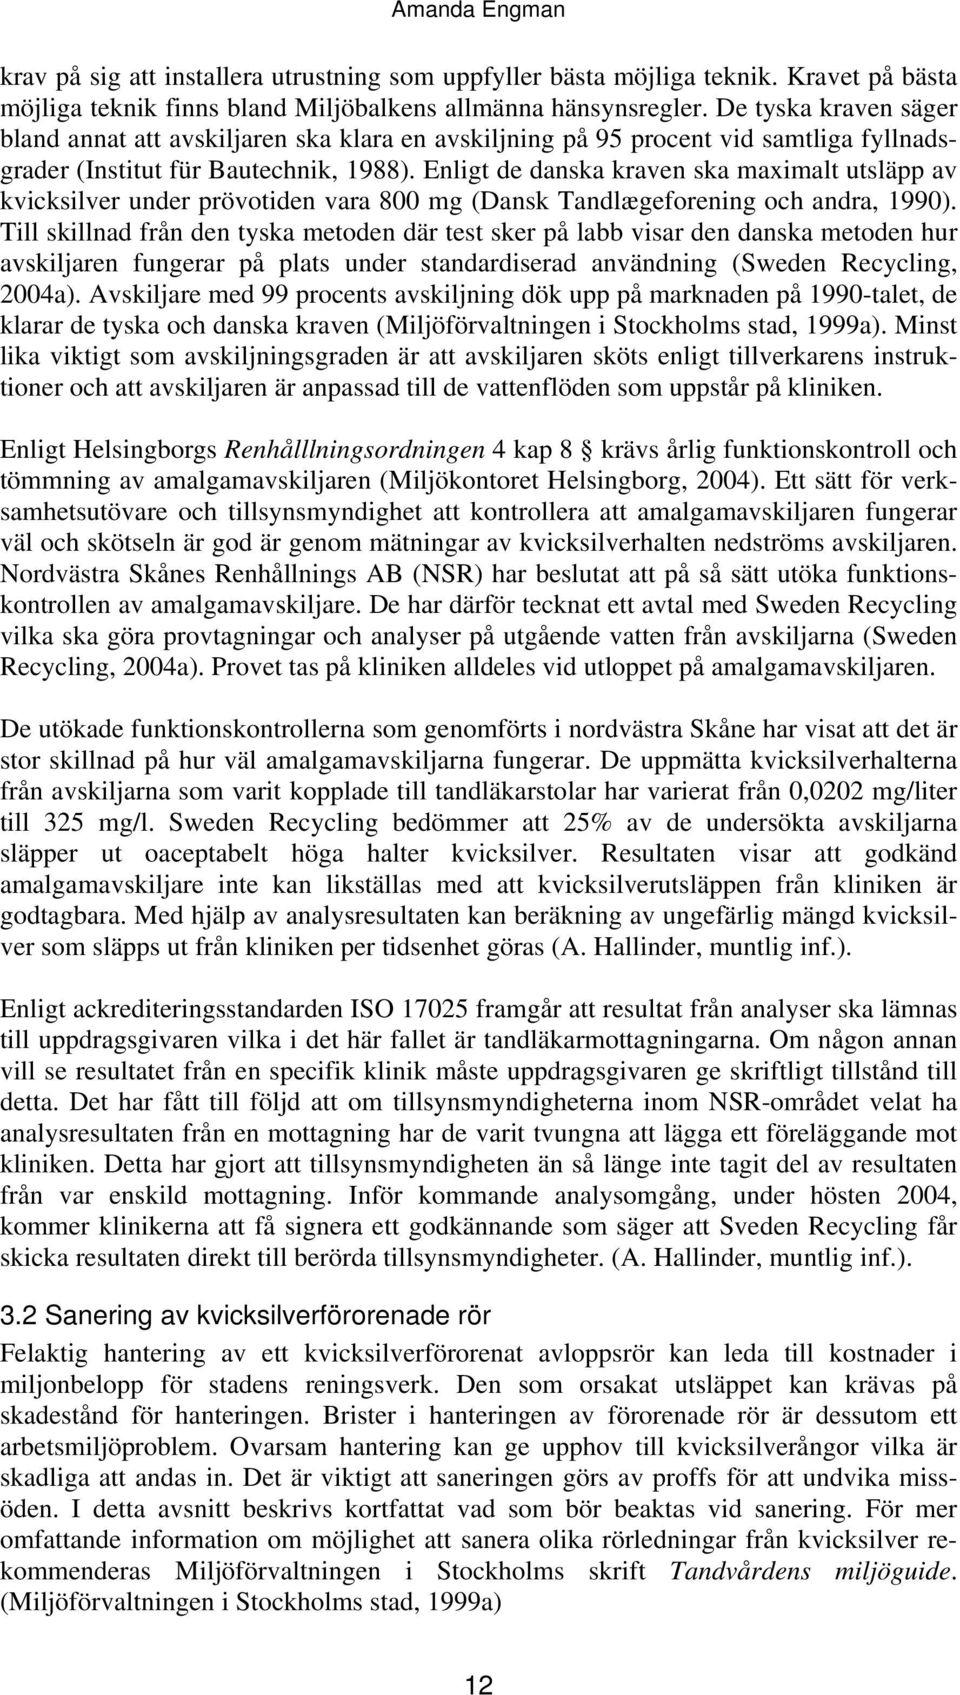 Enligt de danska kraven ska maximalt utsläpp av kvicksilver under prövotiden vara 800 mg (Dansk Tandlægeforening och andra, 1990).